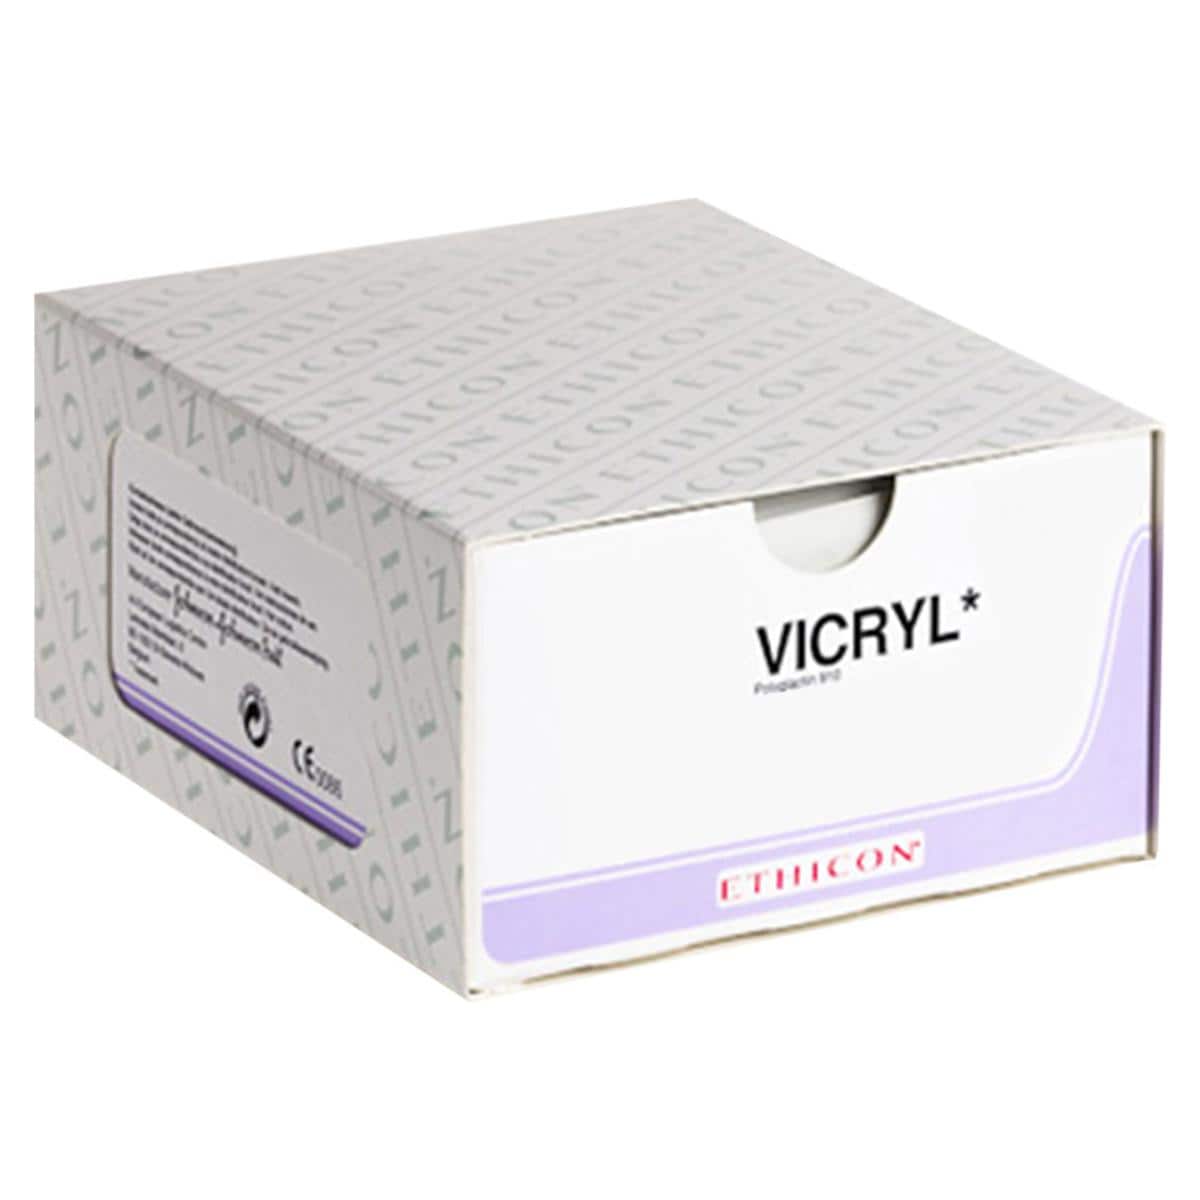 Vicryl - USP 5-0 FS2 45 cm violet V391H, per 36 stuks